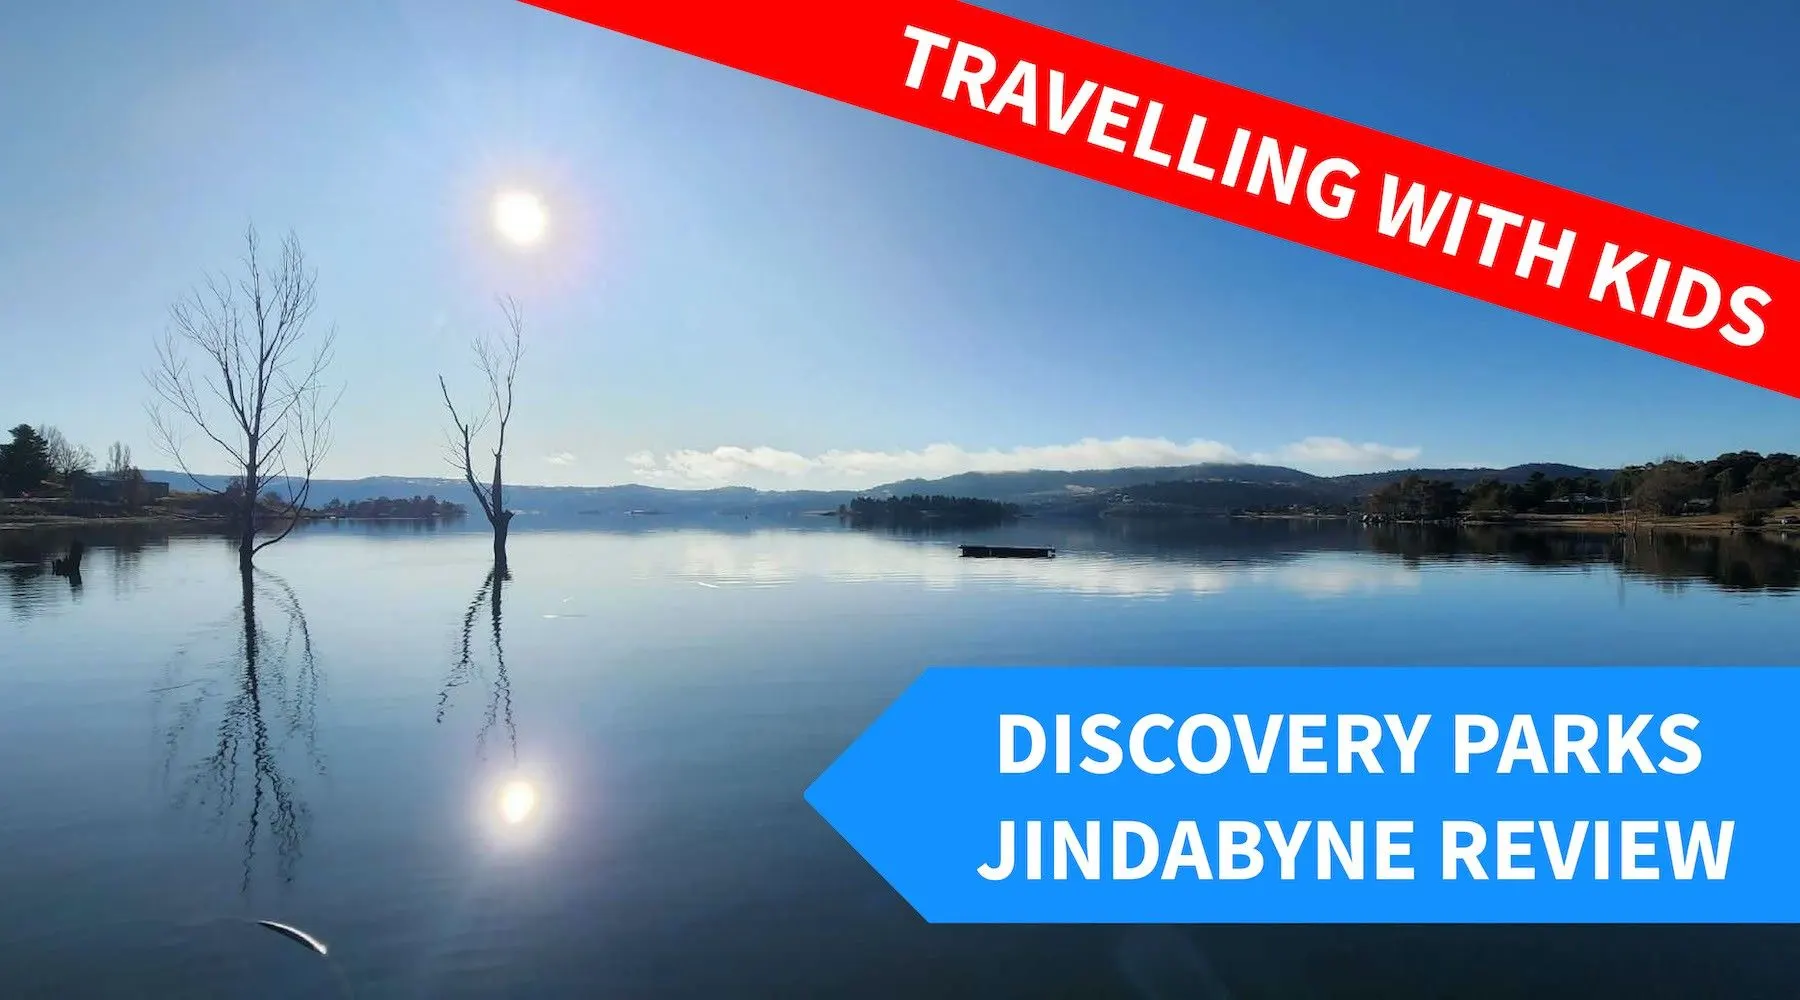 Discovery Parks Jindabyne